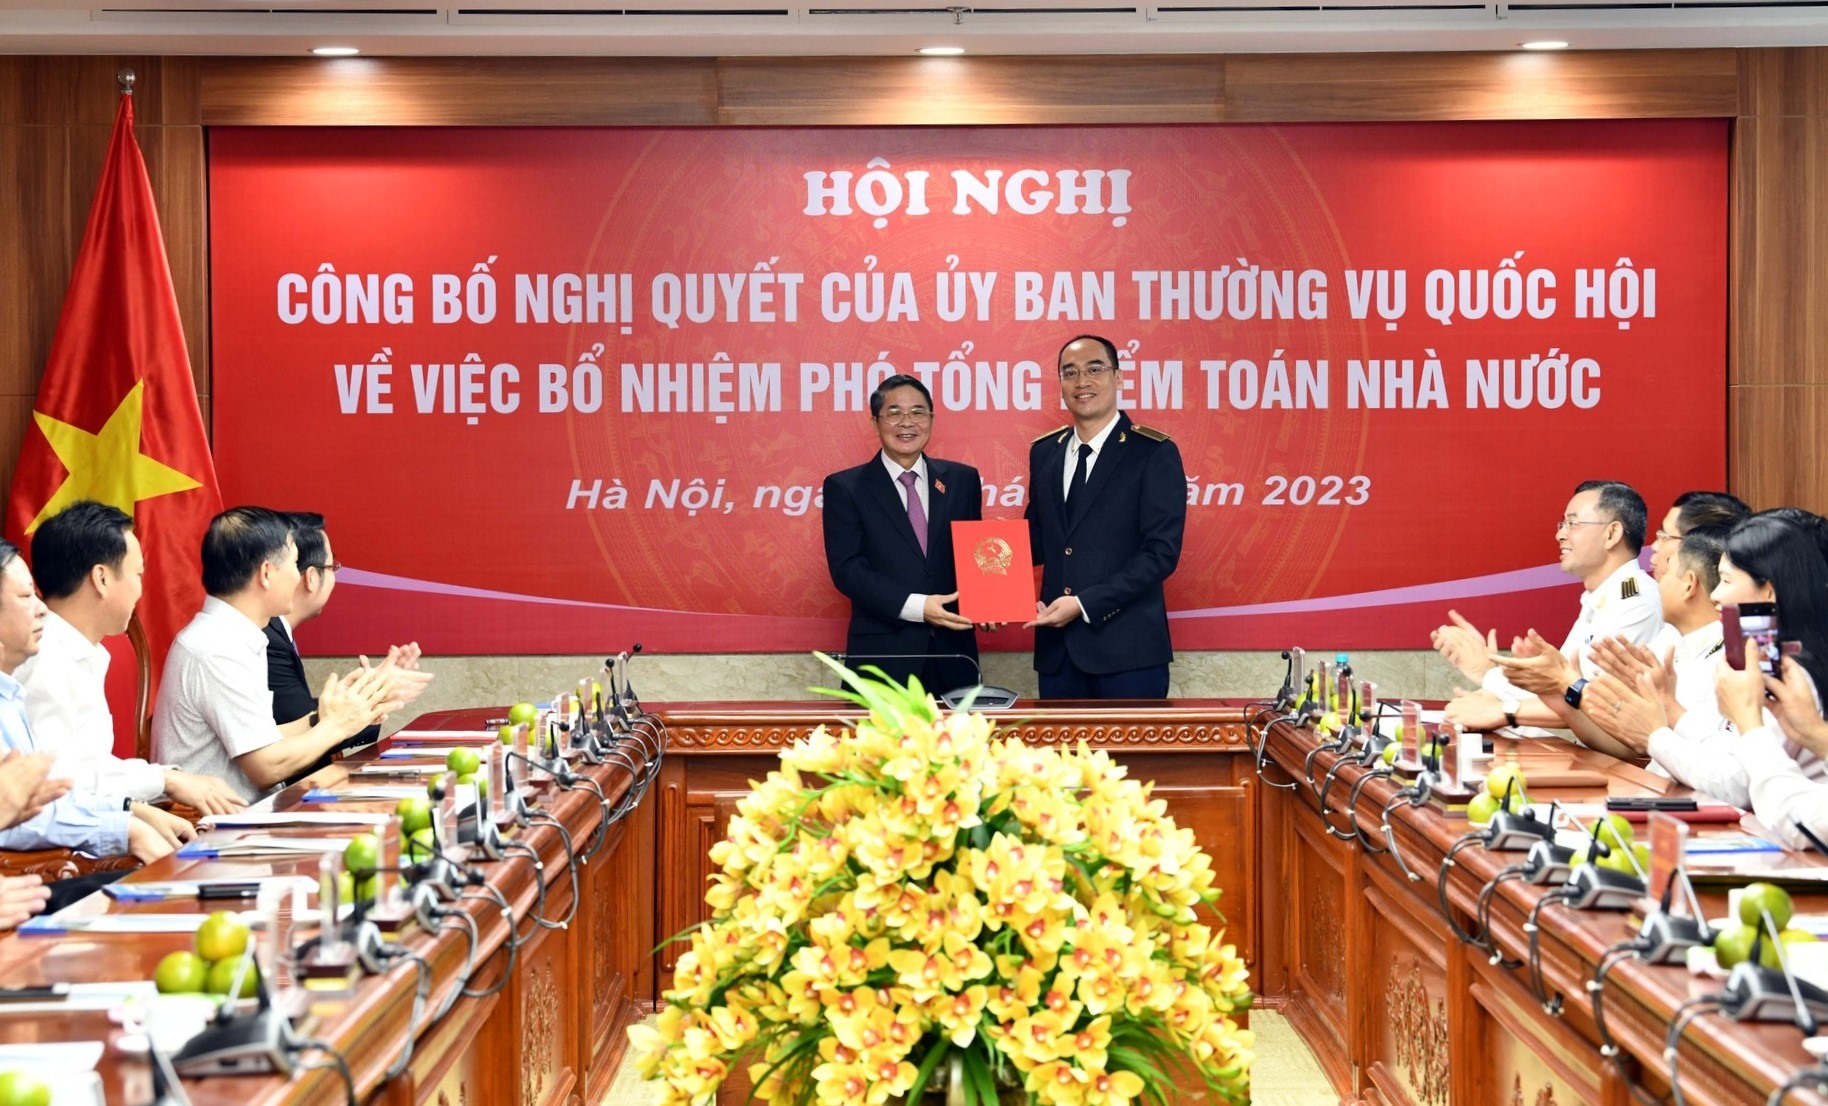 Phó Chủ tịch Quốc hội Nguyễn Đức Hải trao Nghị quyết bổ nhiệm của Ủy ban Thường vụ Quốc hội cho ông Bùi Quốc Dũng. Ảnh: VGP